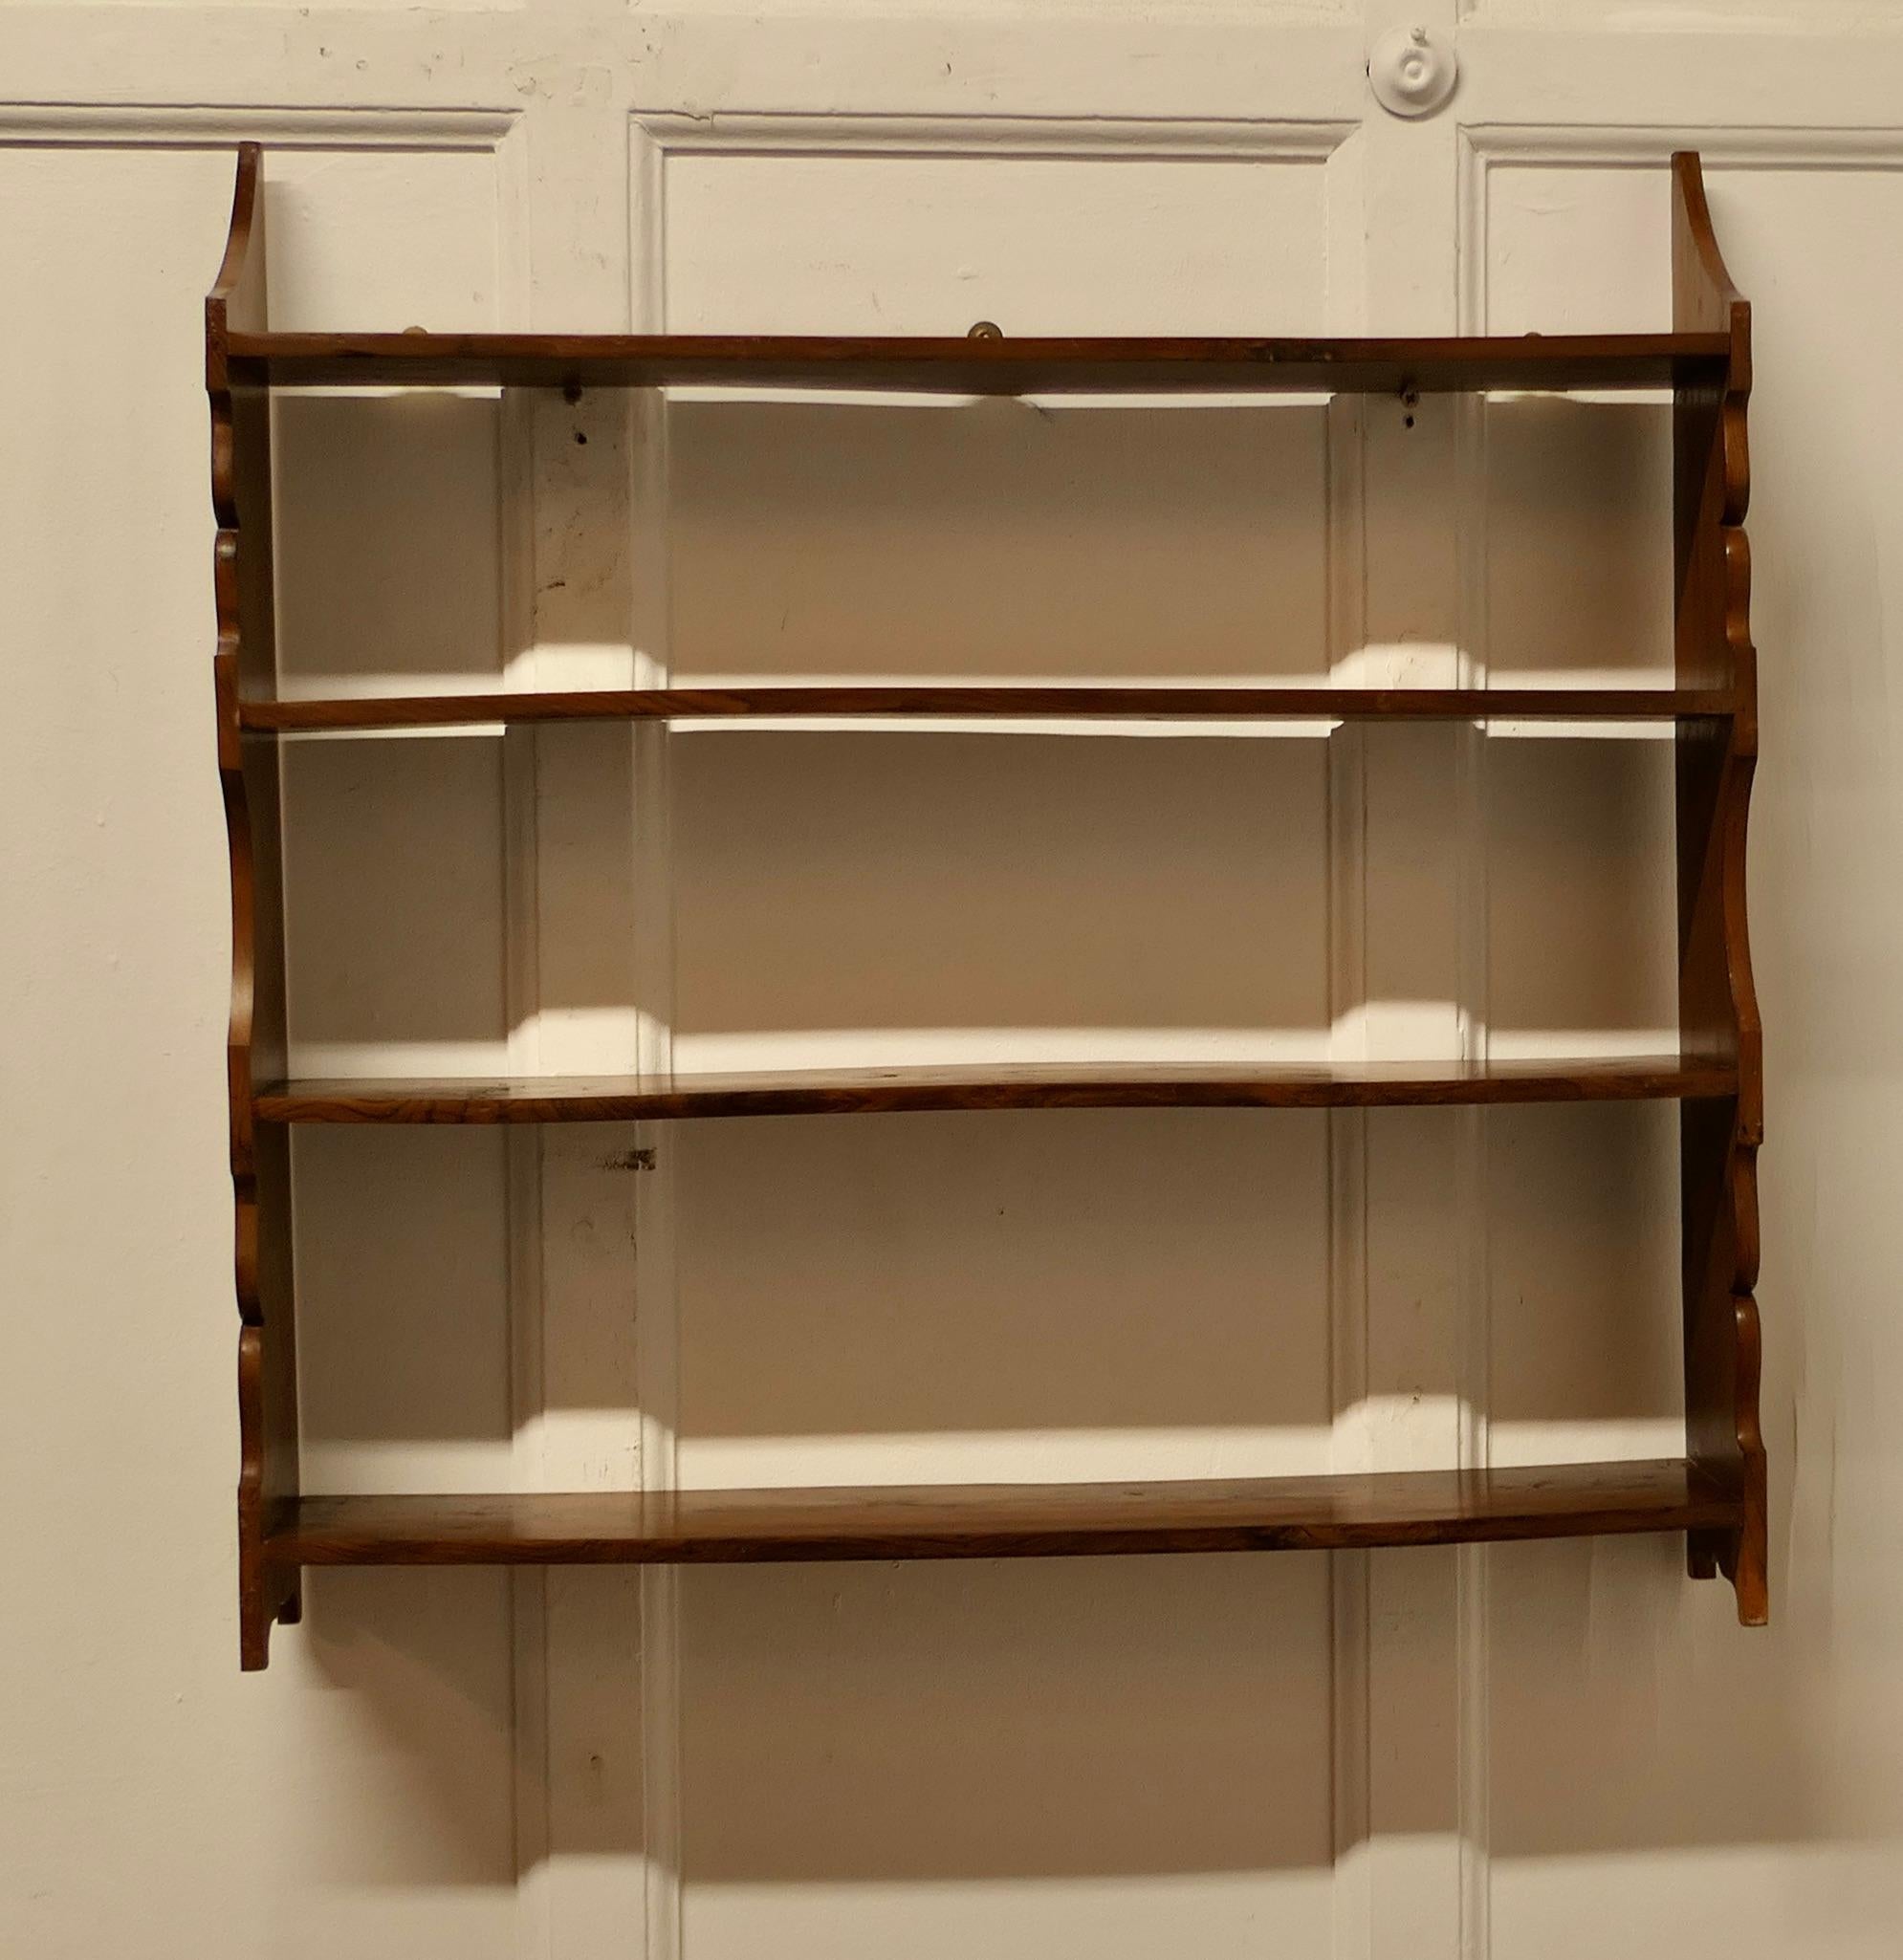 Kunsthandwerkliches Bücherregal aus Eibe mit offener Front zum Aufhängen

Dieses hochwertige Bücherregal hat 4 offene Fächer und eine geschnitzte Verzierung entlang jeder Seitenkante
Das Bücherregal ist in einem guten, attraktiven und stabilen